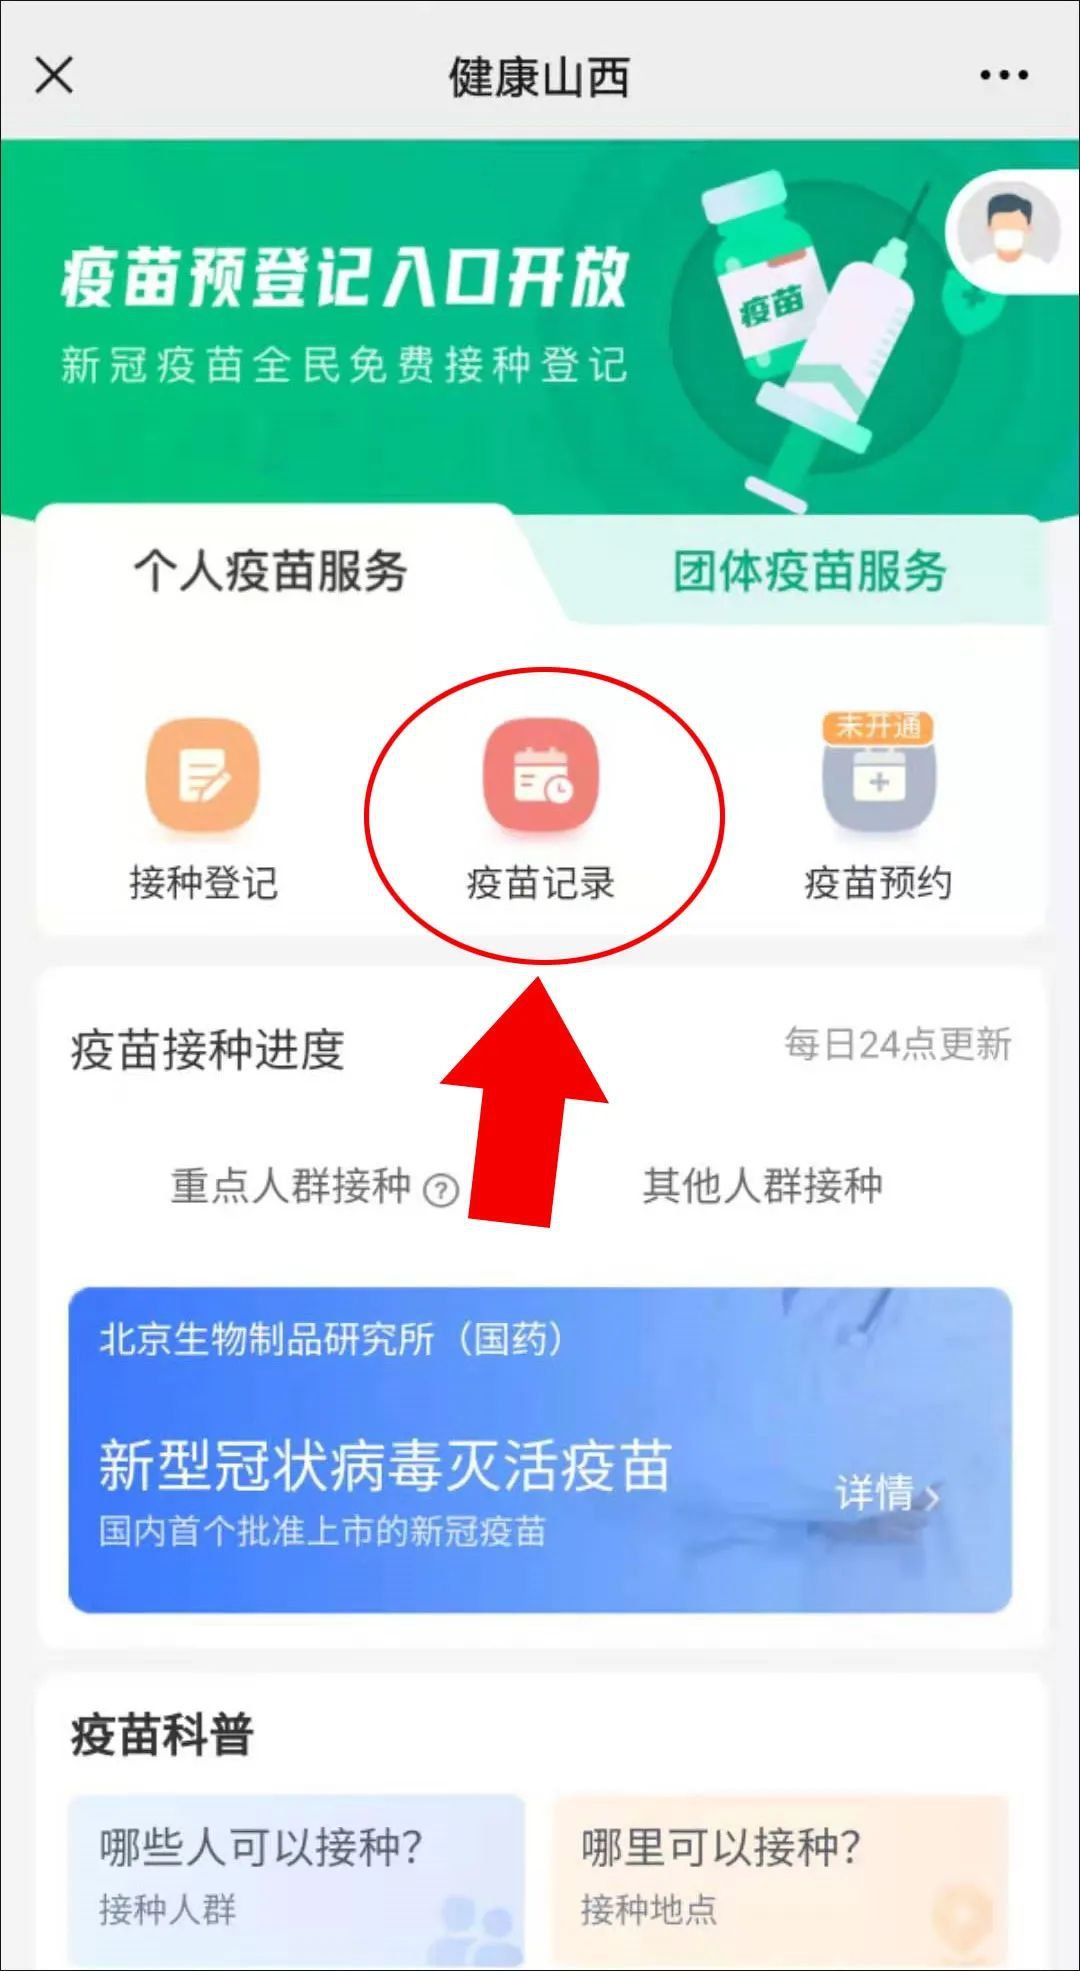 北京大学第一医院有序开展新冠肺炎病毒疫苗接种工作_北医新闻网